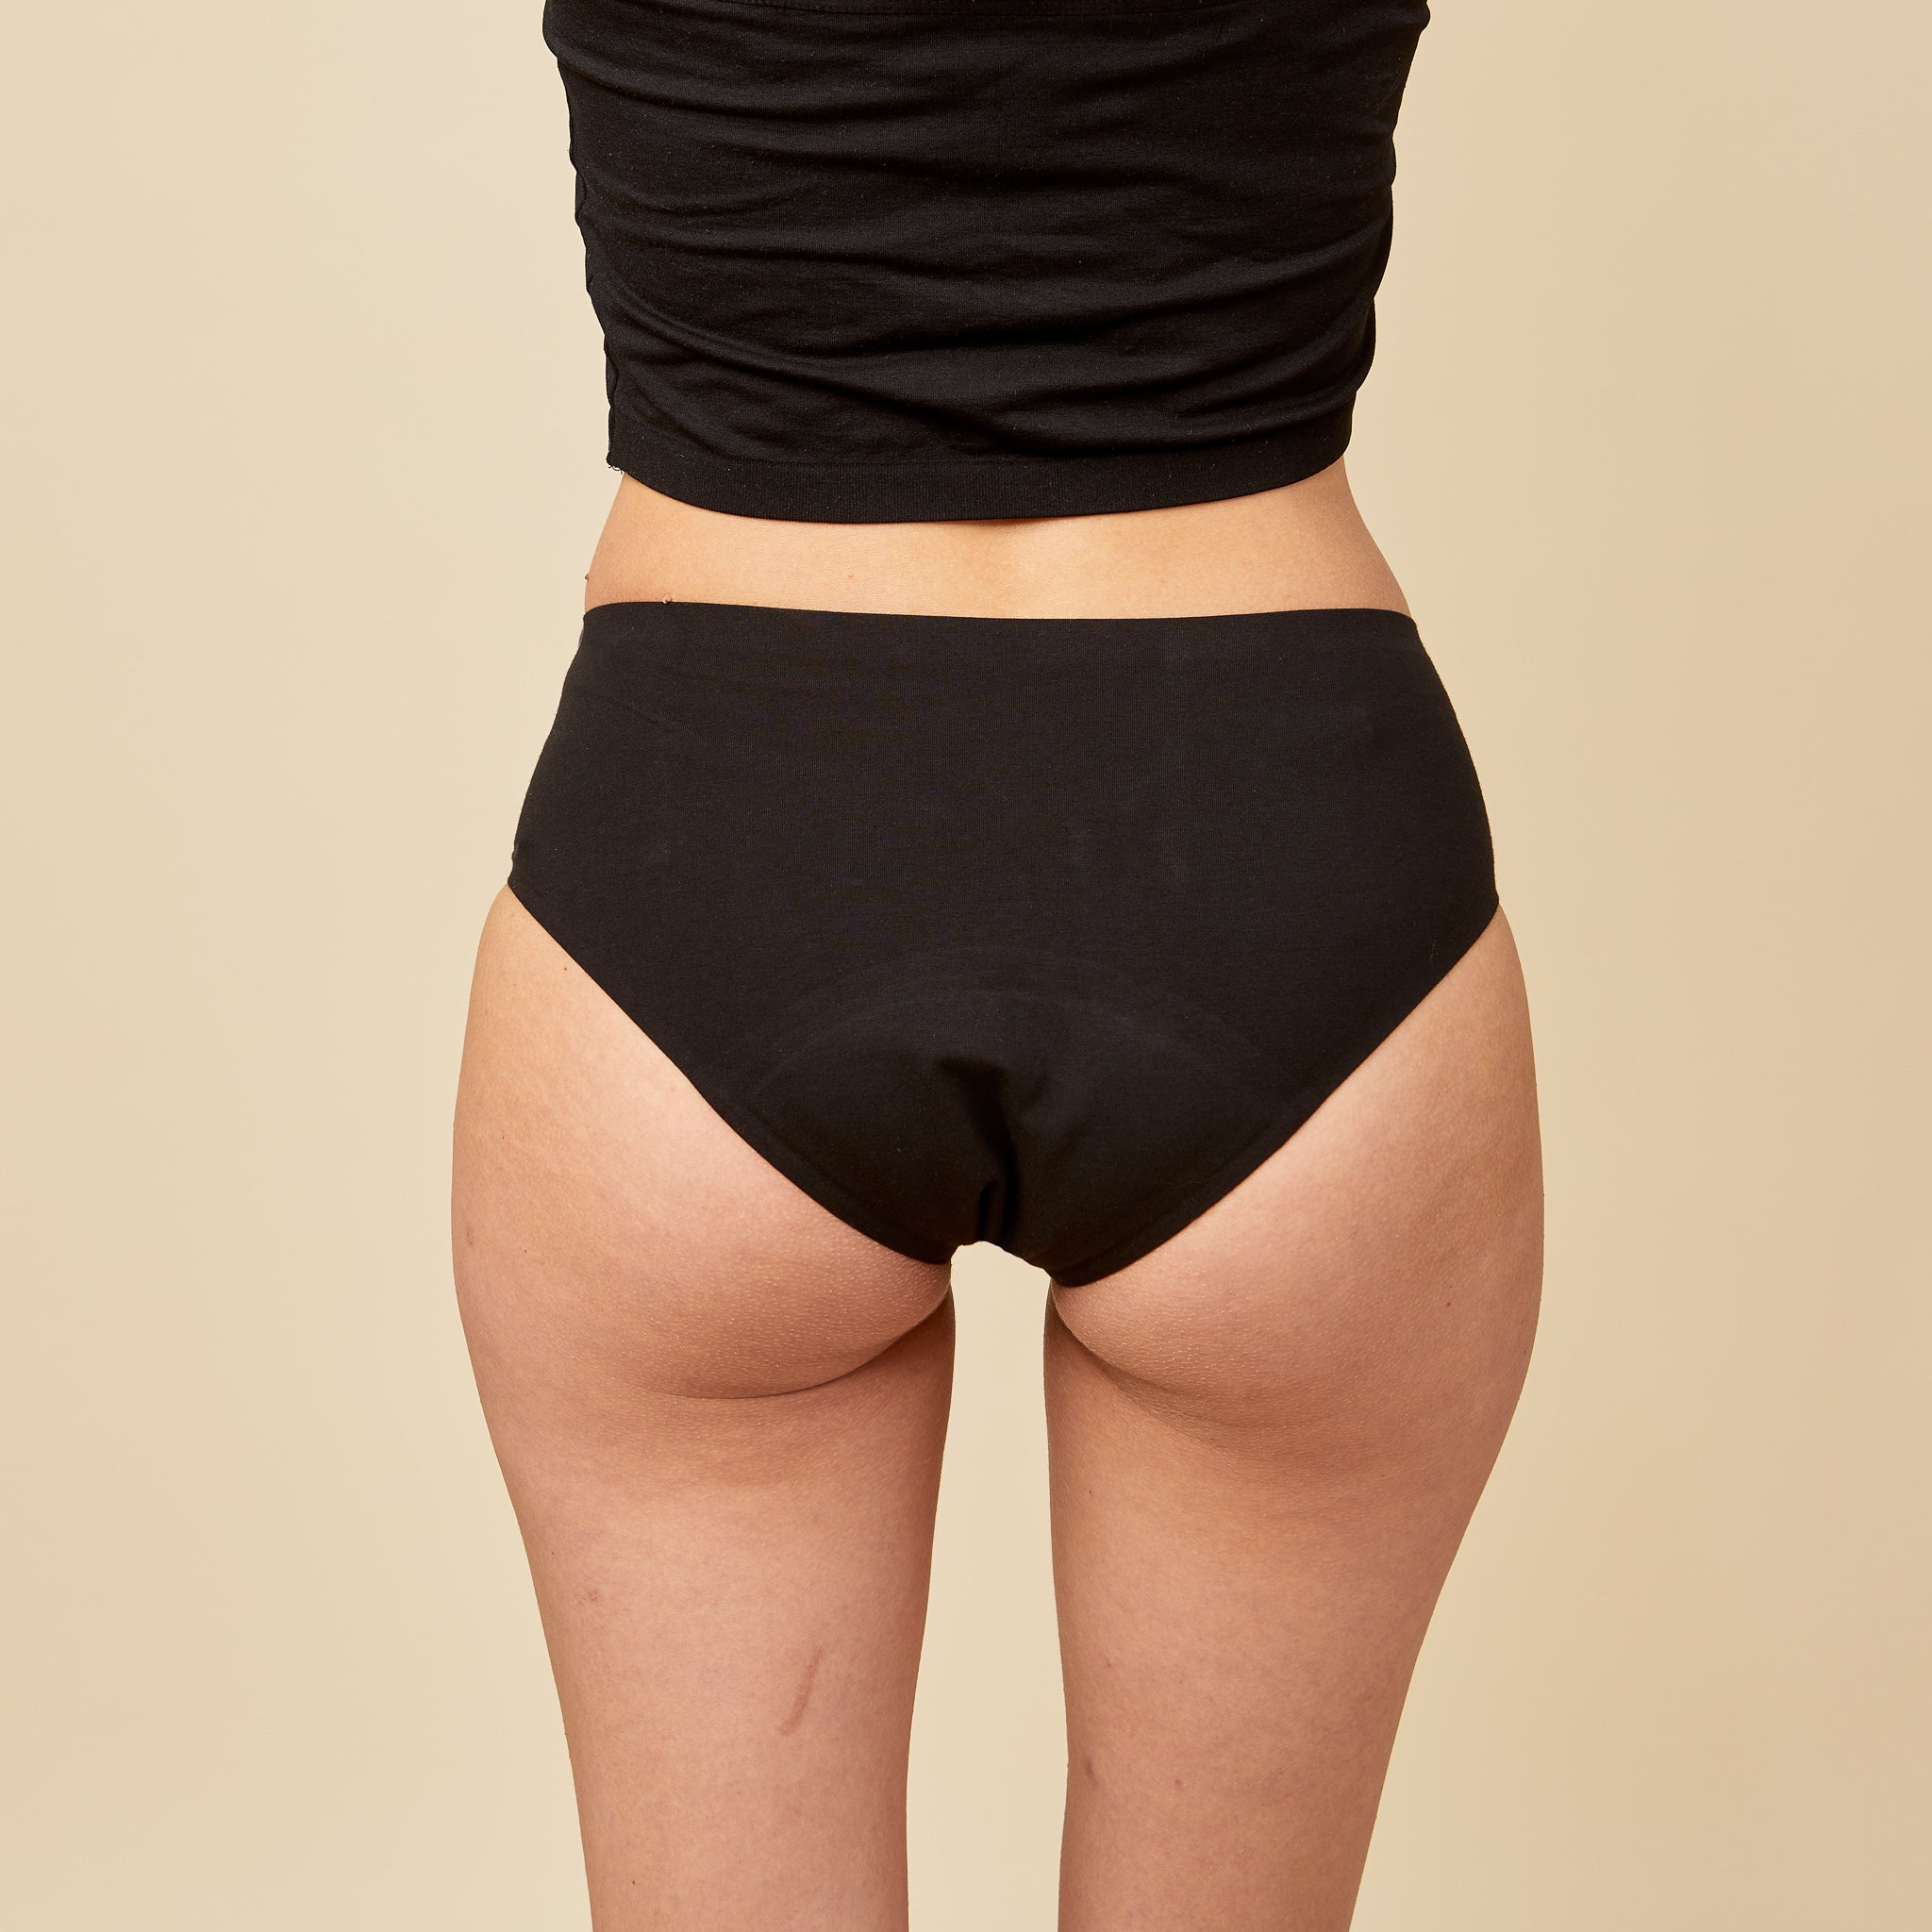 6 x Bundle- Period Underwear- Hipster Cut- Organic Cotton